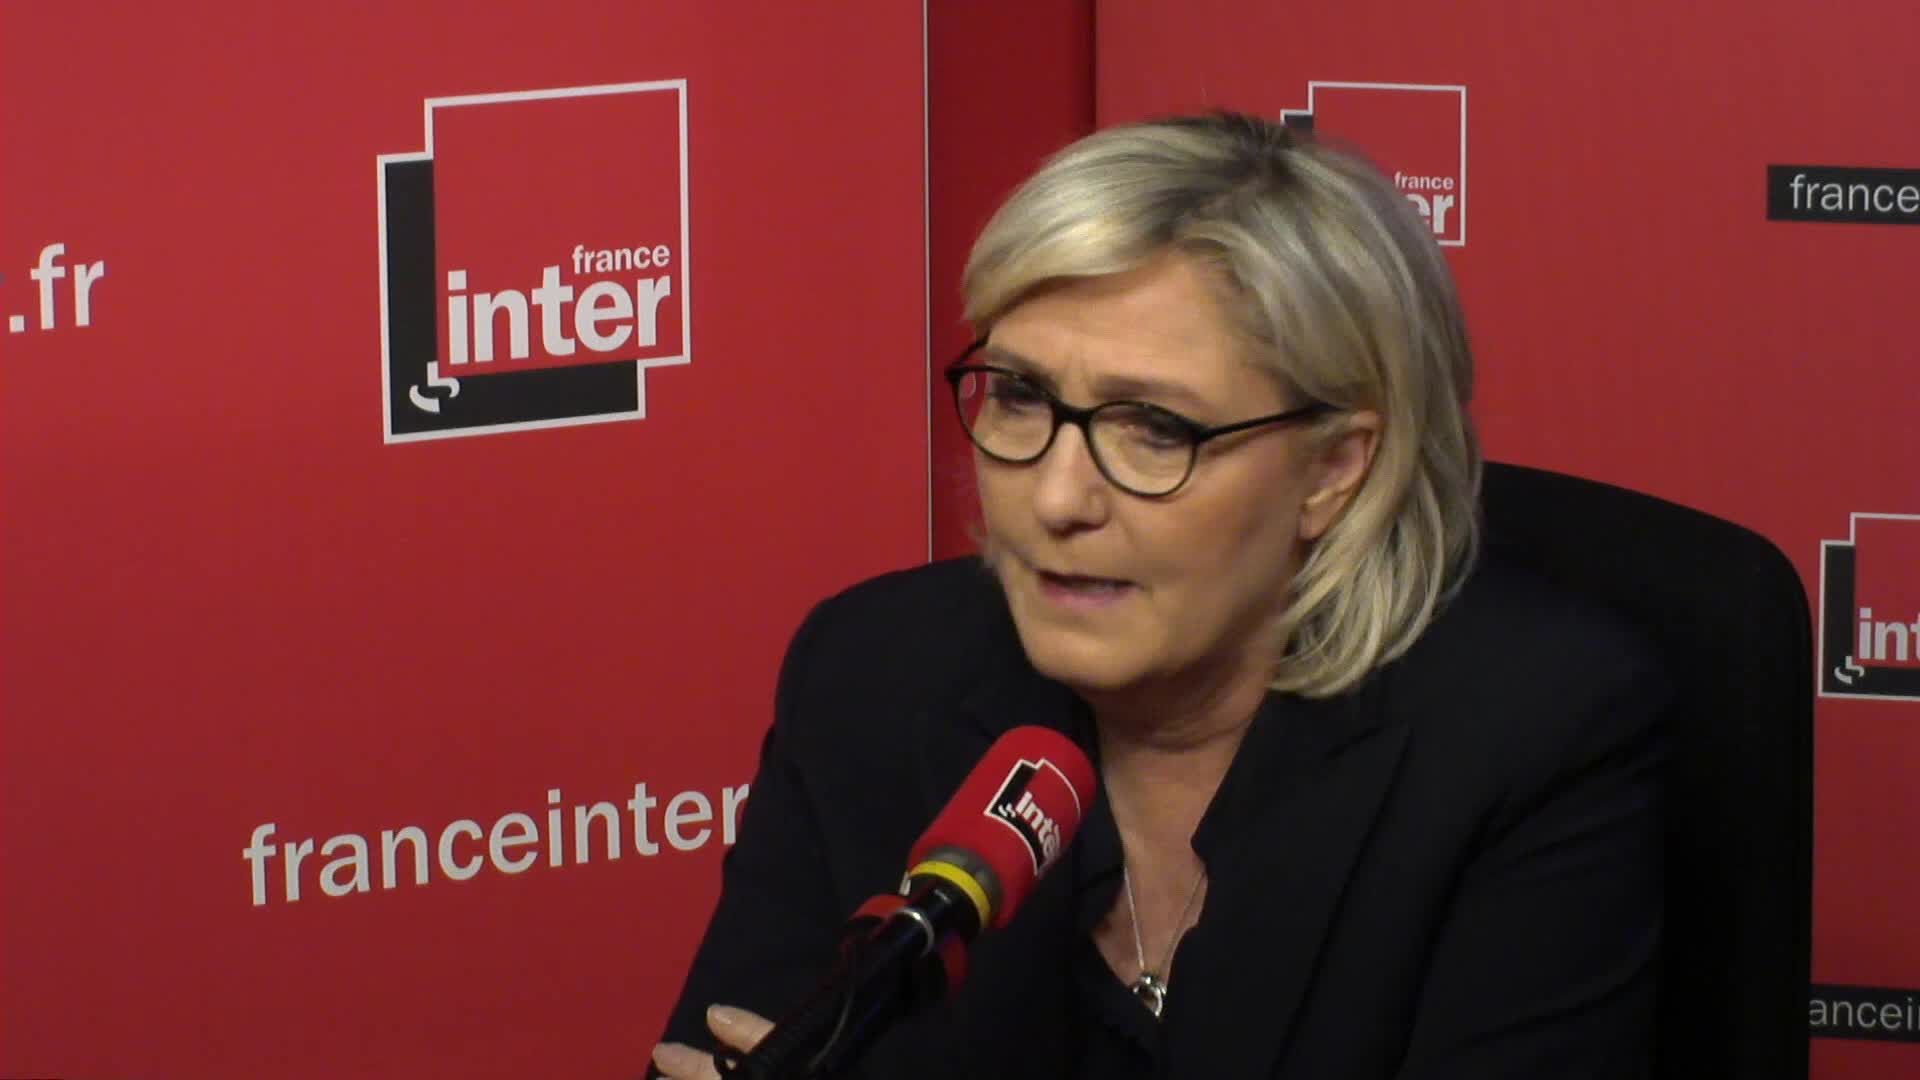 Marine Le Pen quitte précipitamment une émission de radio à cause d’une blague sur sa nièce !